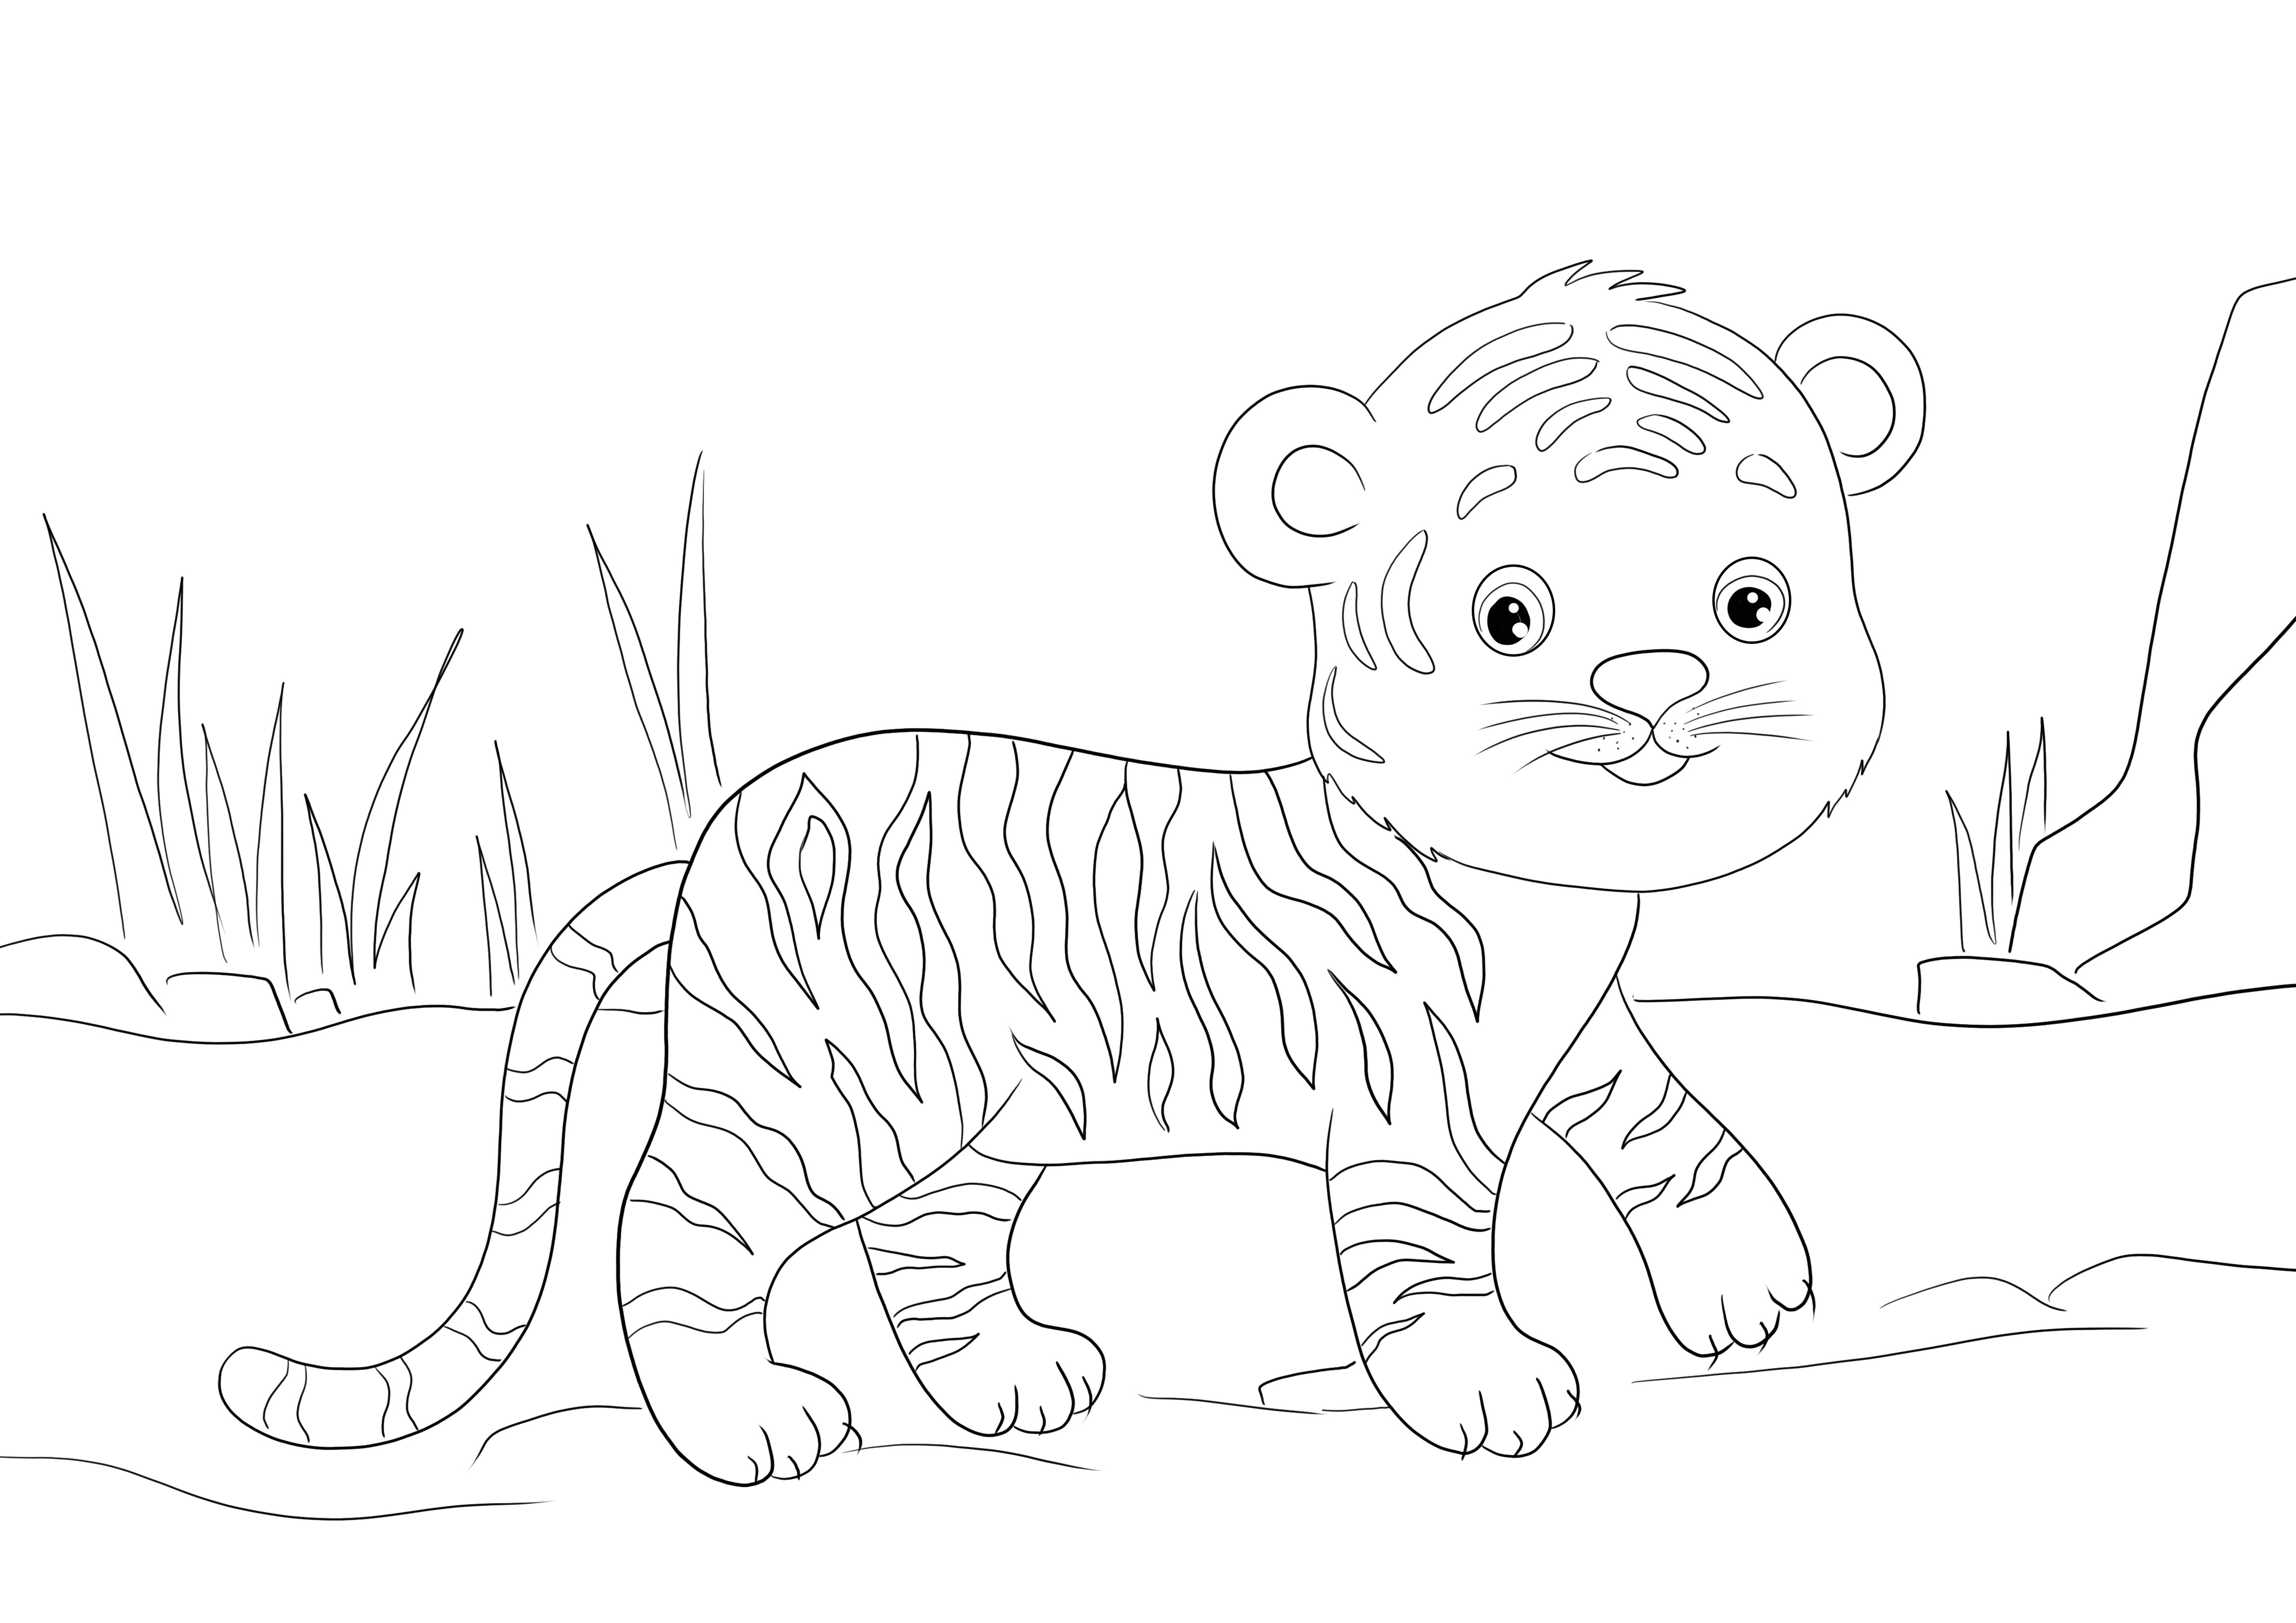 Egyszerű és könnyen letölthető ingyenes színezőlap egy tigriskölyökről